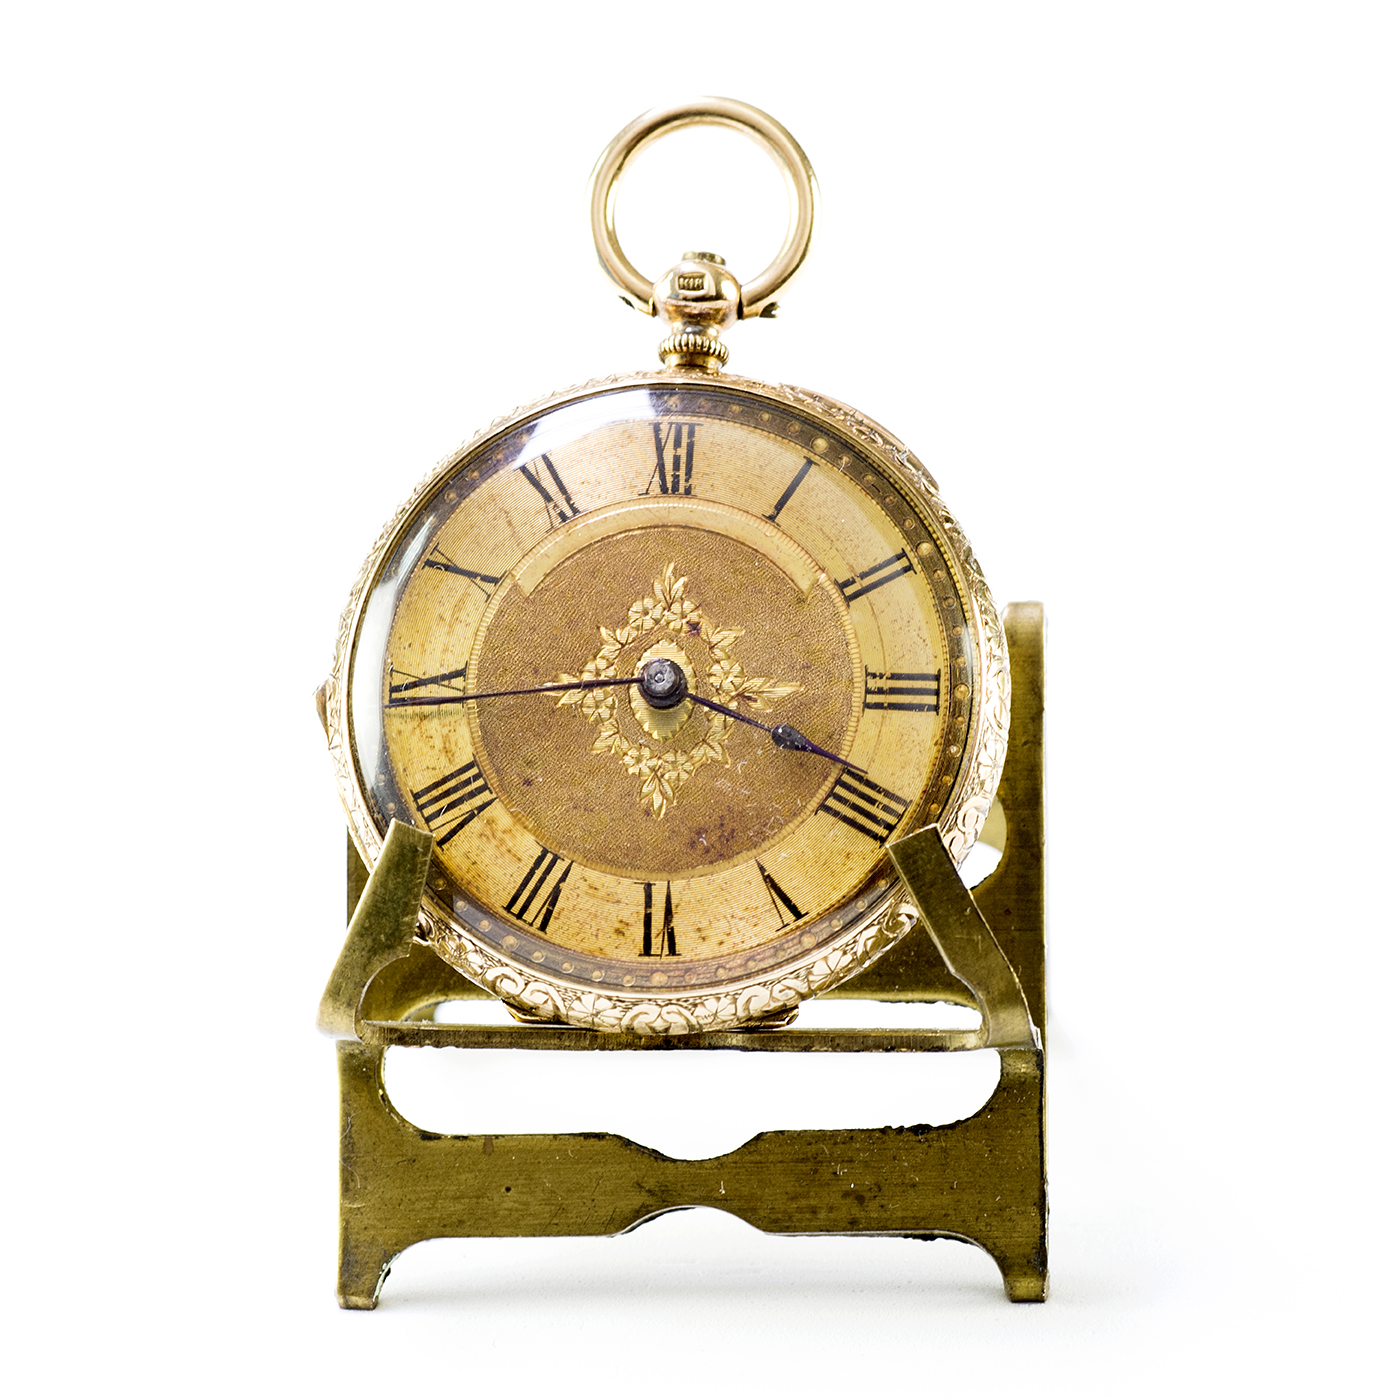 AUGUSTE ROBERT STAUFFER & FILS (ARS & F). Accrochez la montre, Lépine. Suisse, vers 1880.